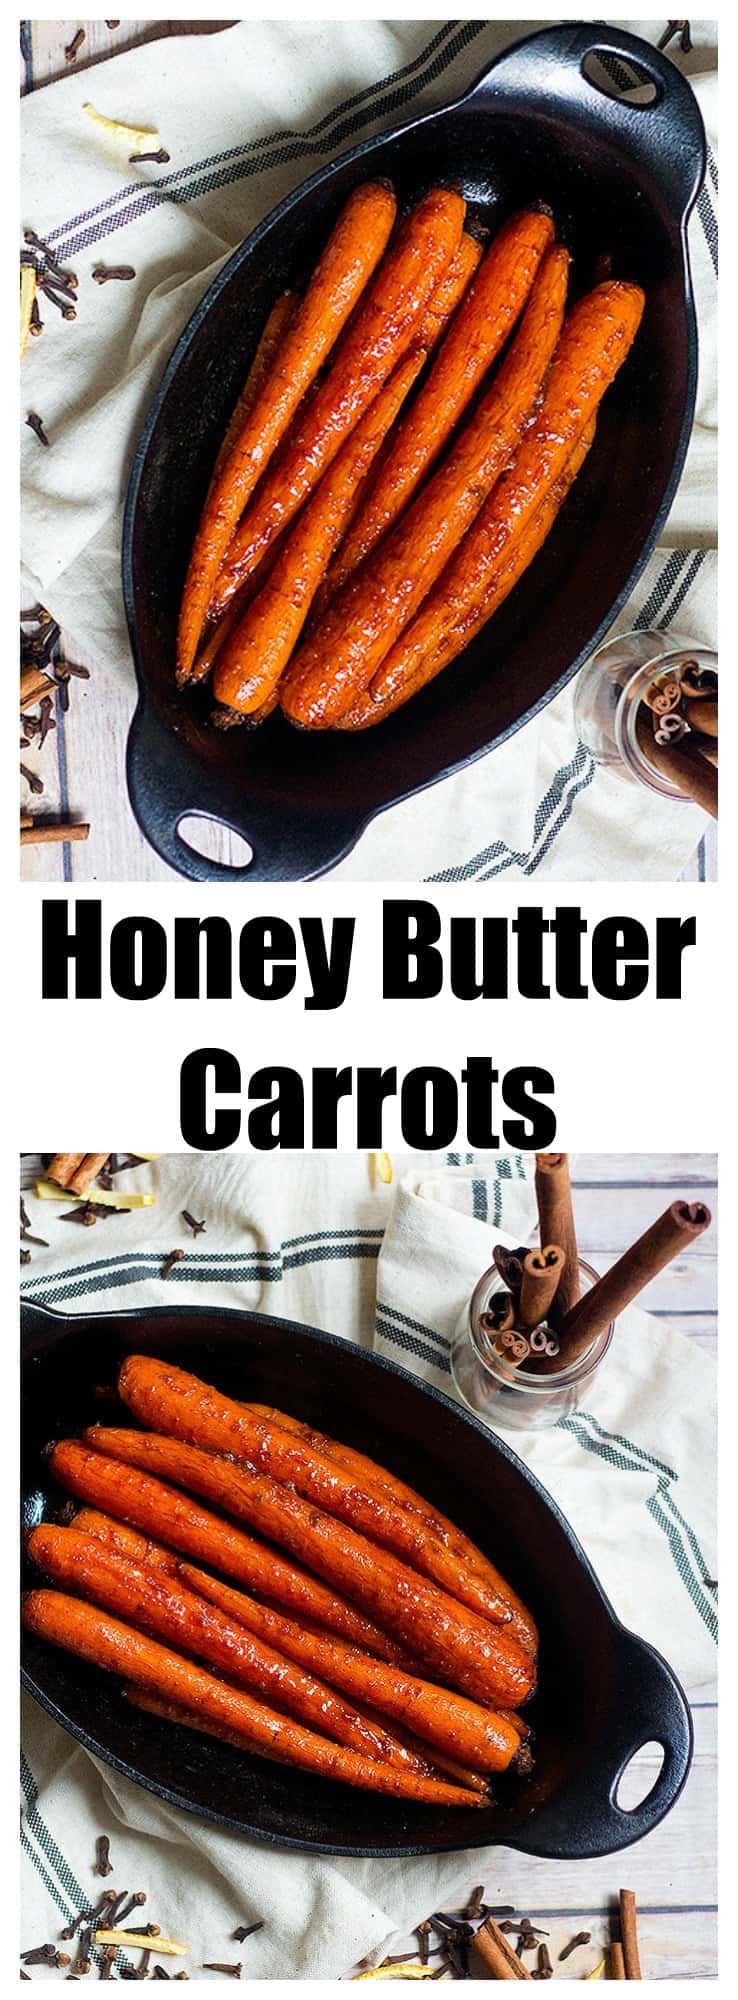 Honey Butter Carrots | Brown Sugar Carrots | From UnicornsintheKitchen.com 